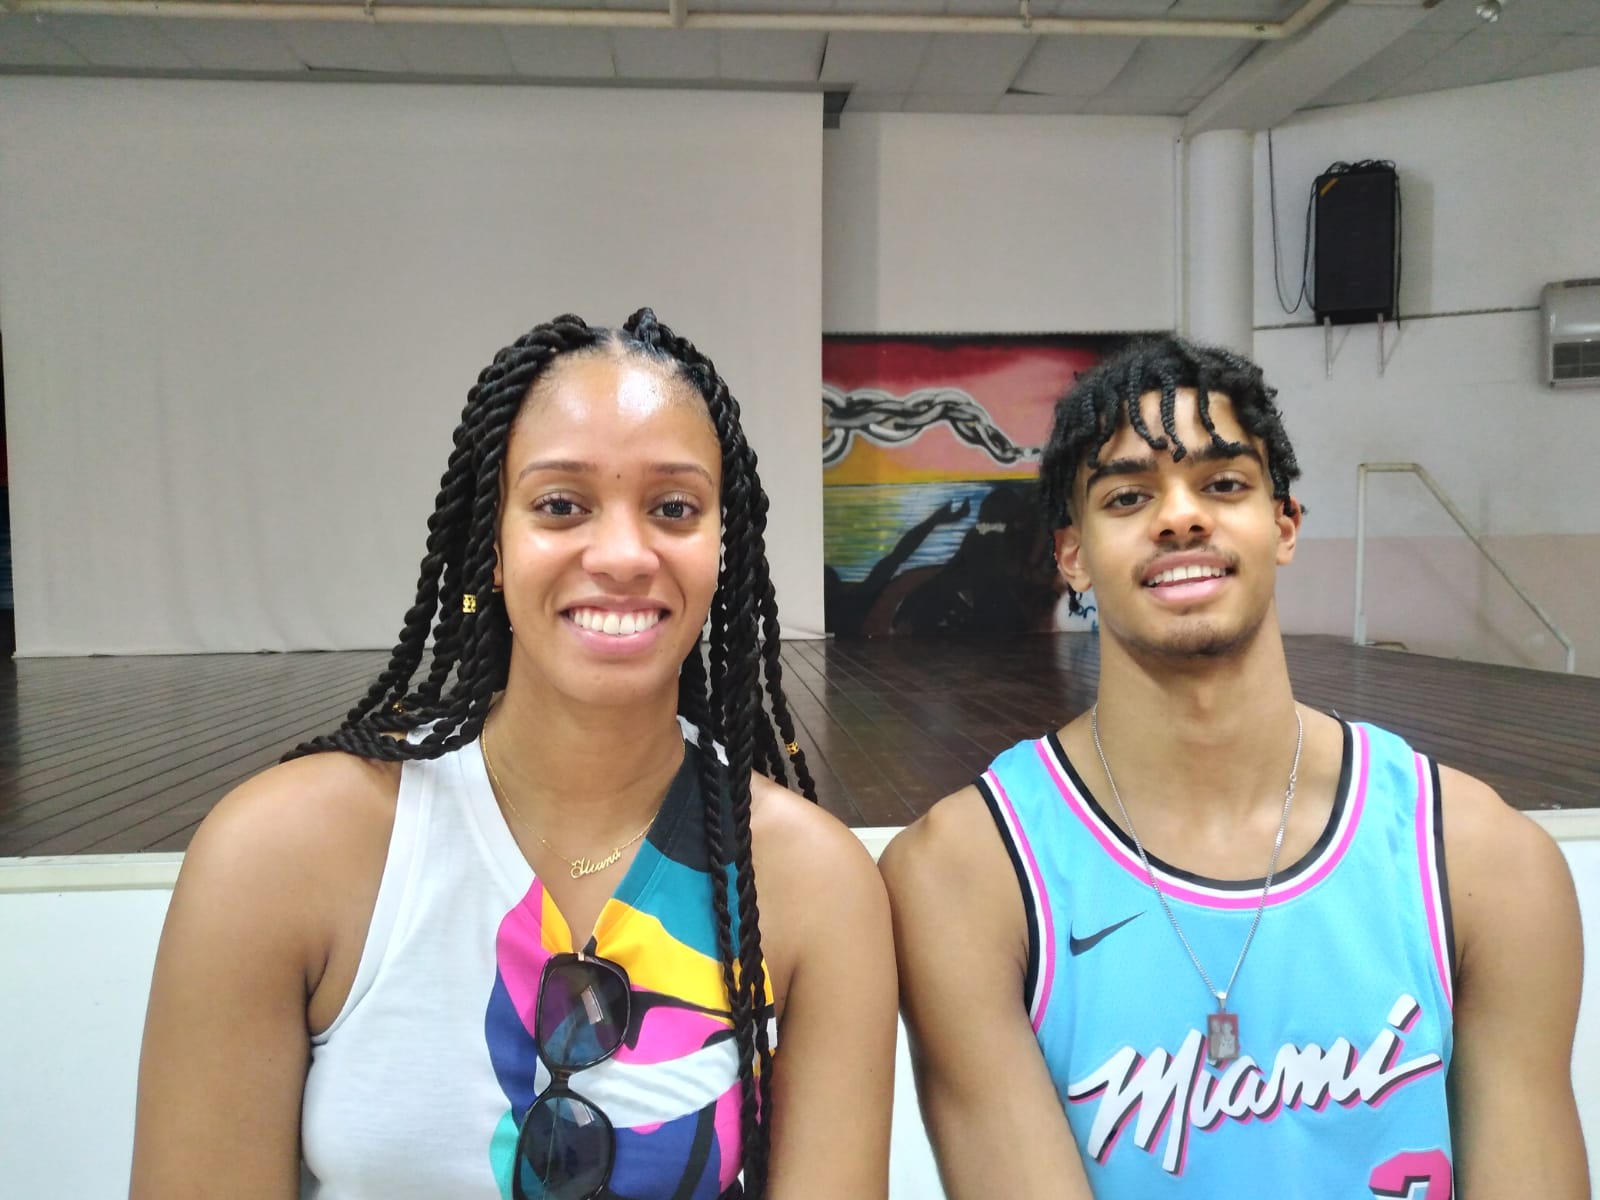     La basketteuse Illiana Rupert et son frère Ryan rencontrent des jeunes basketteurs martiniquais

